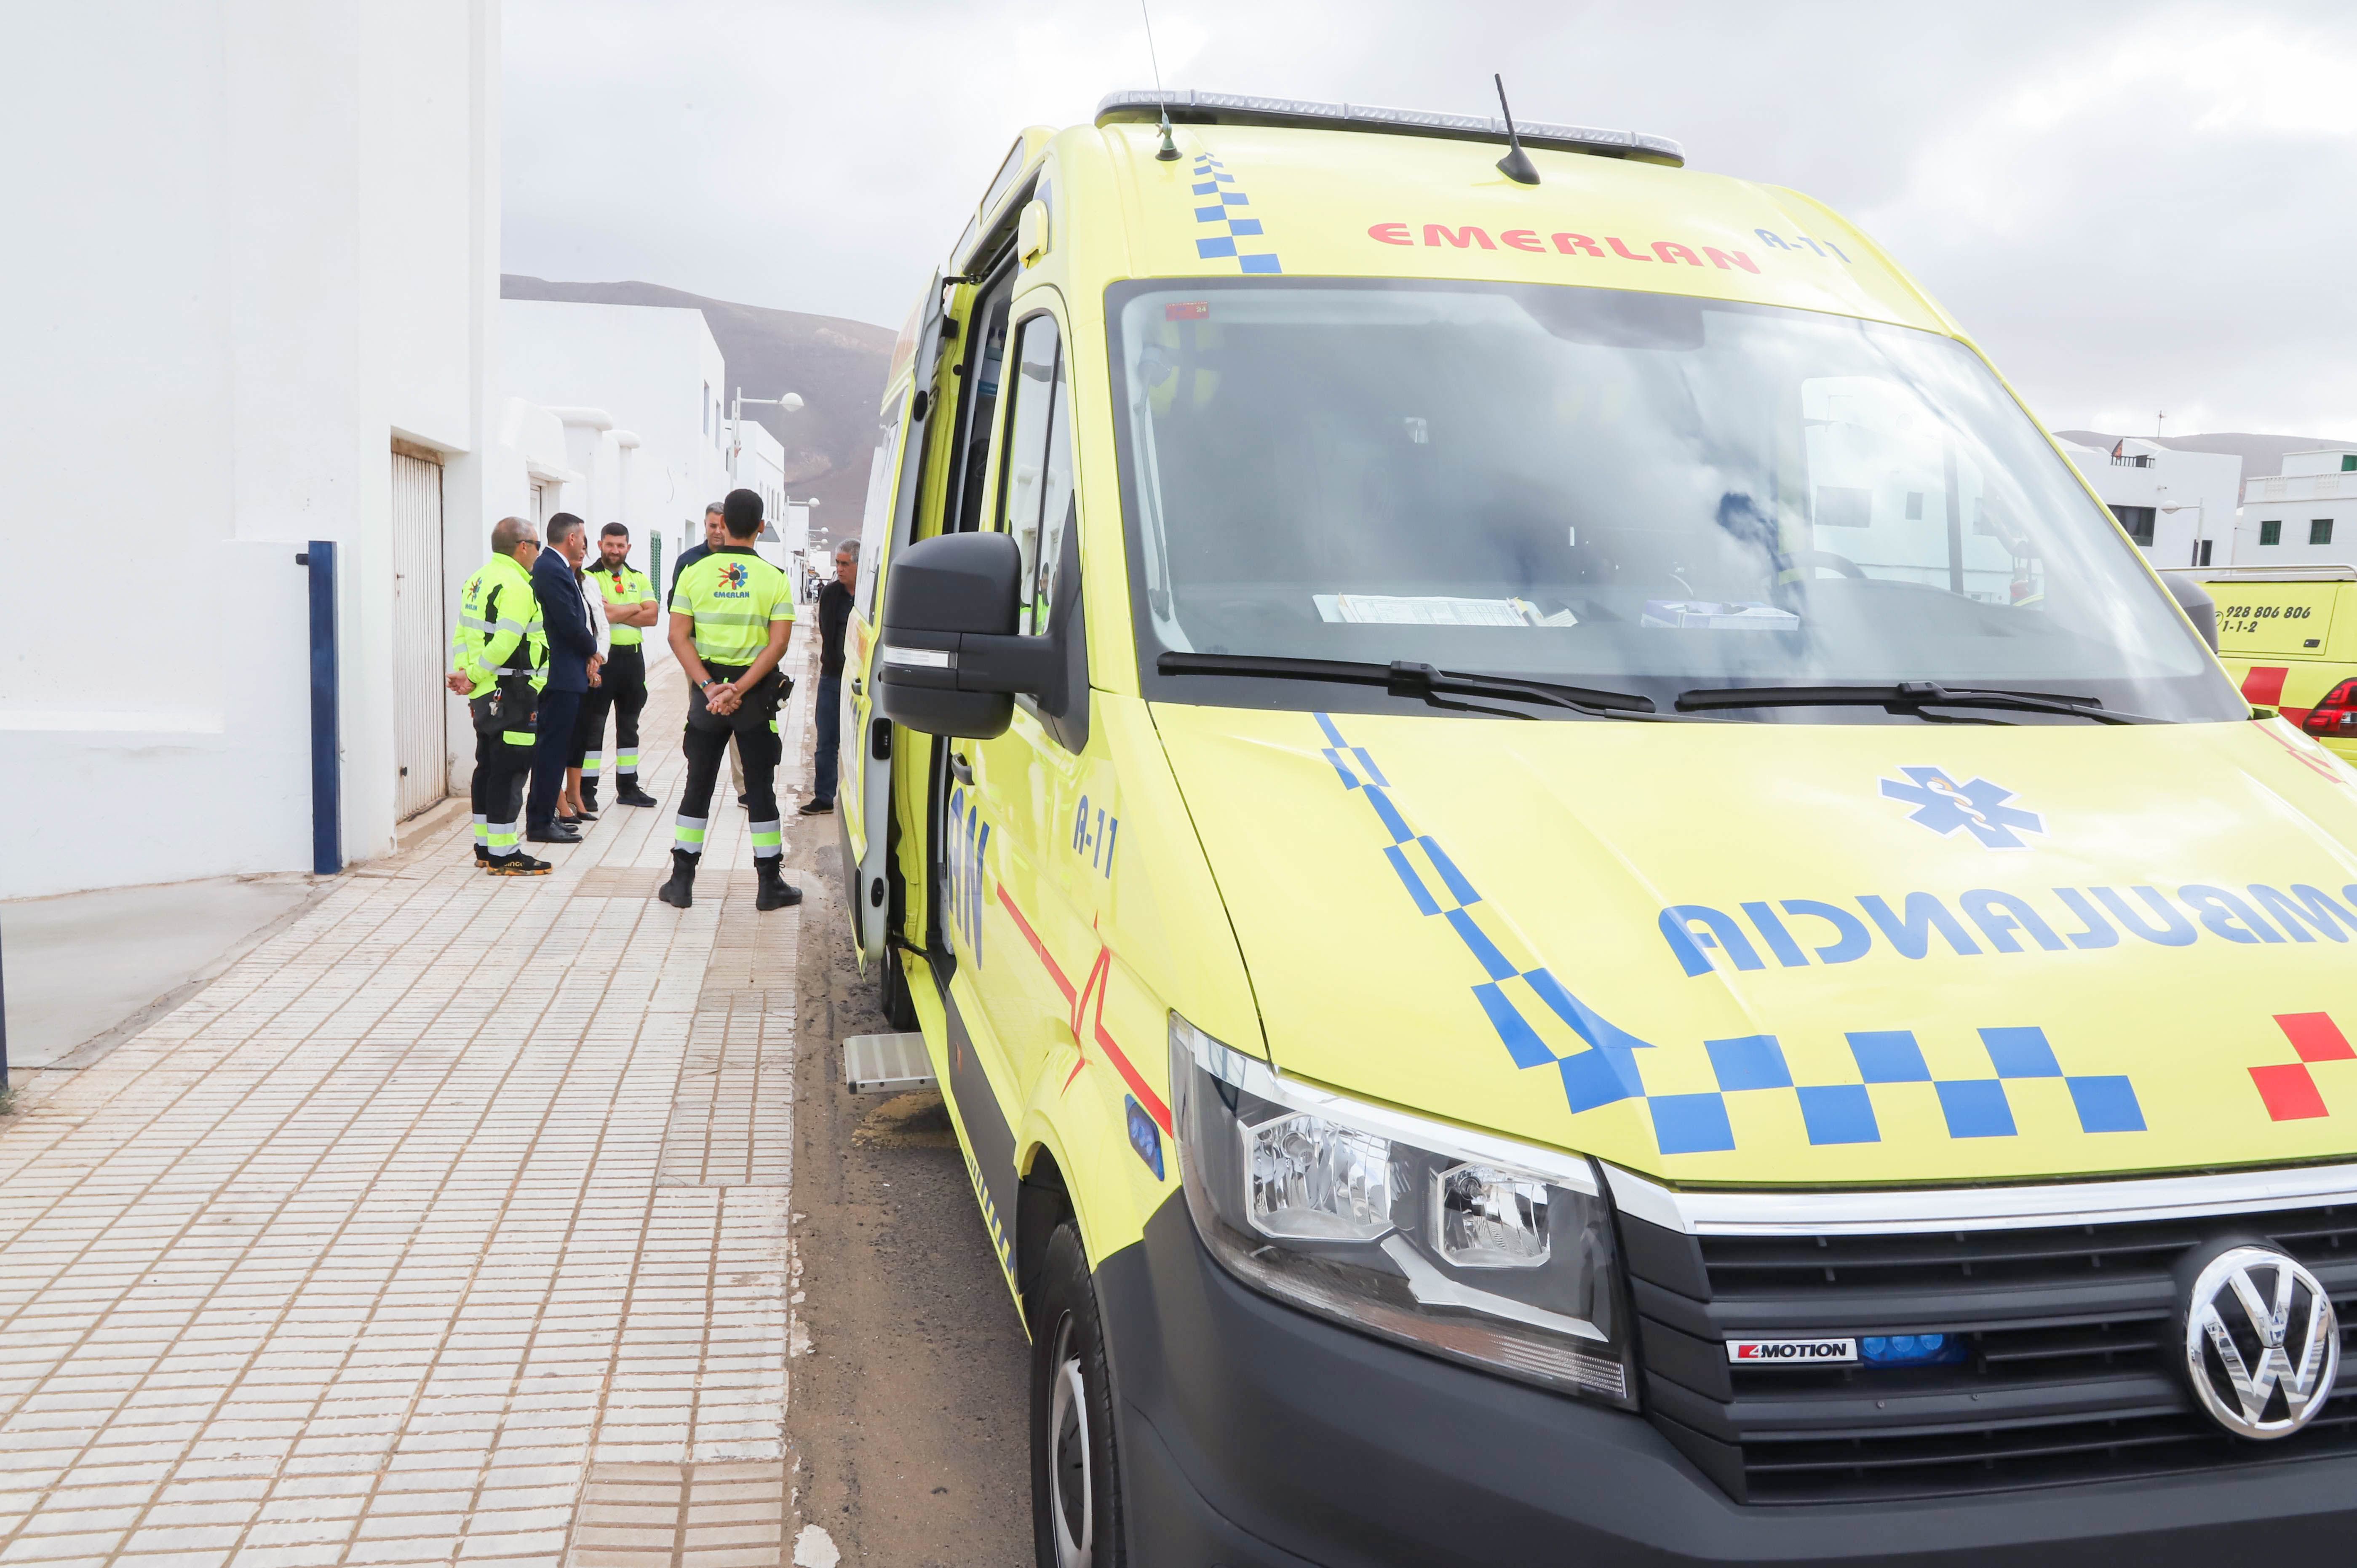 La nueva ambulancia adquirida por el Cabildo de Lanzarote en la localidad de Famara. Foto: Cabildo de Lanzarote.